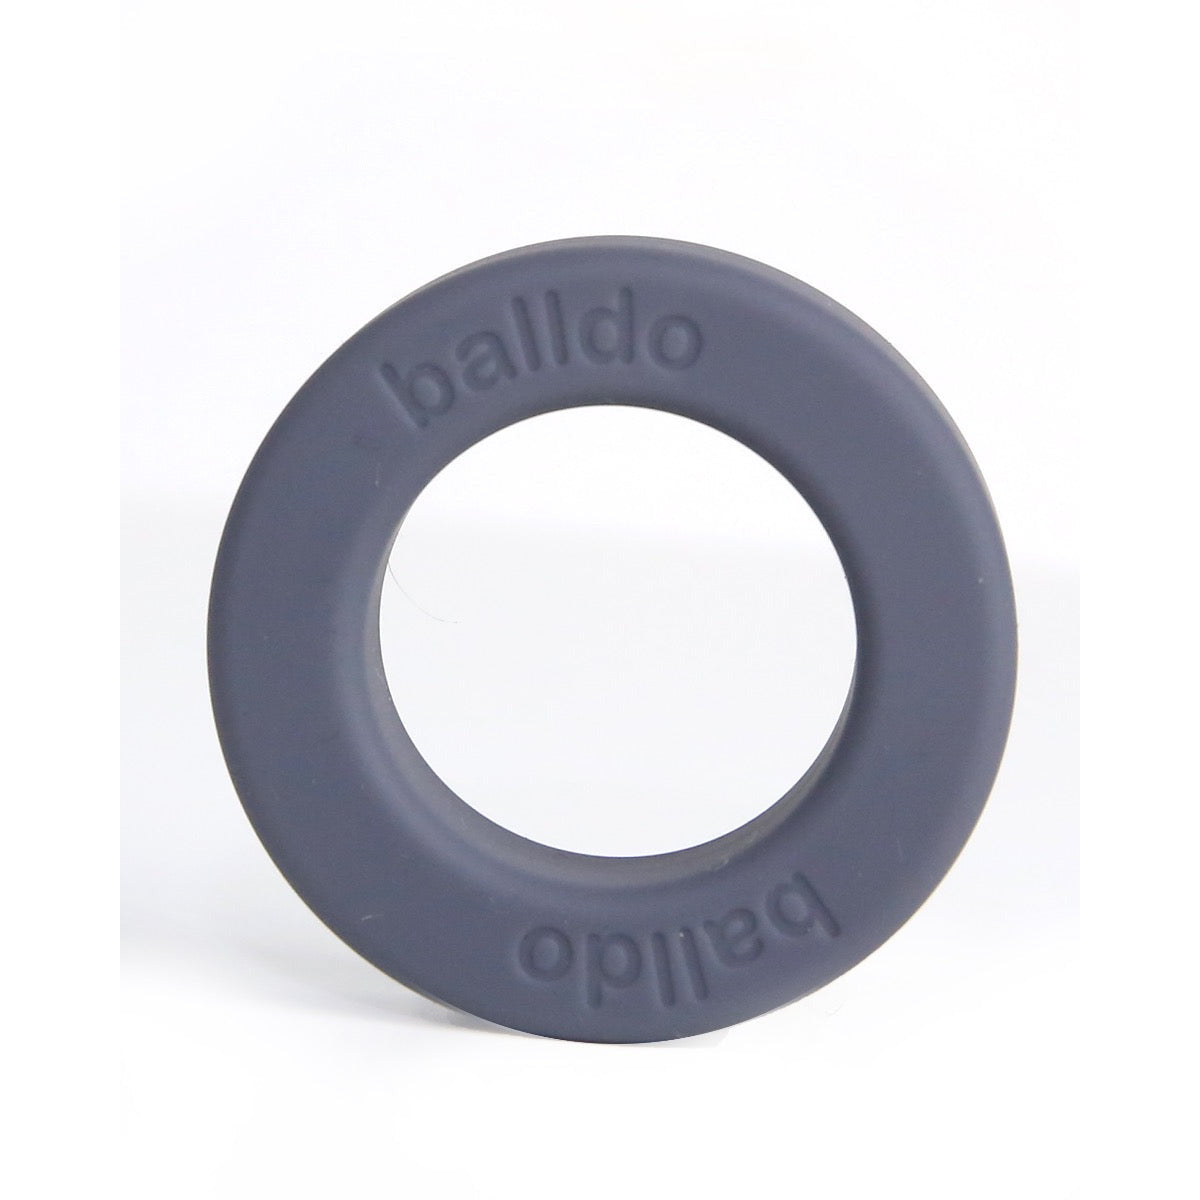 Balldo-Single-Spacer-Ring-Steel-Grey